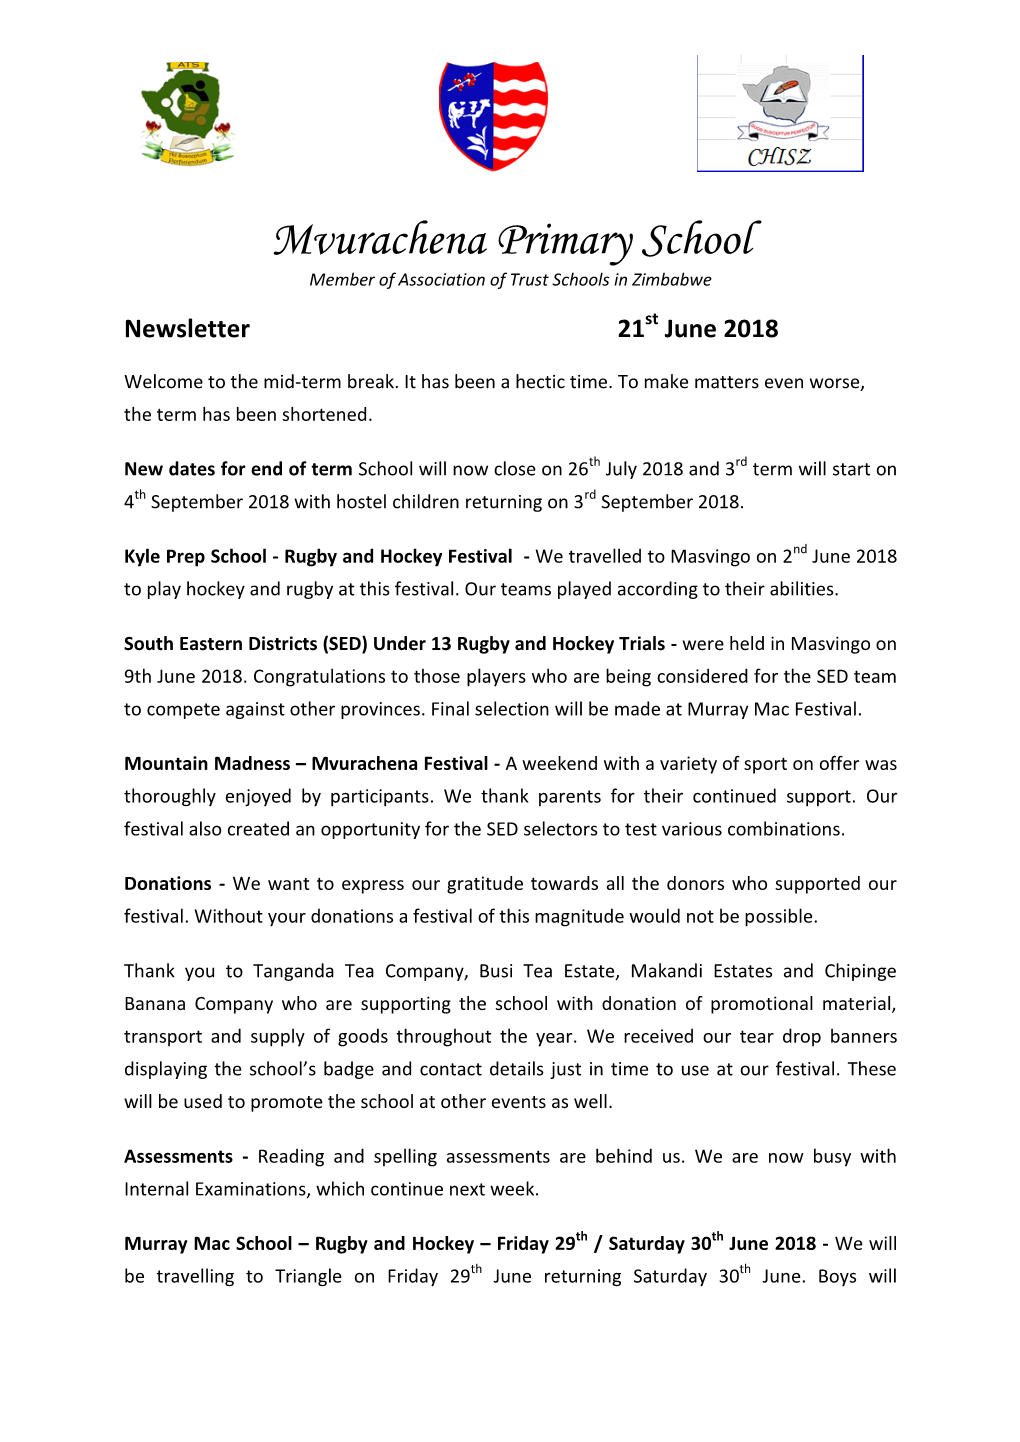 Mvurachena Primary School Member of Association of Trust Schools in Zimbabwe Newsletter 21St June 2018